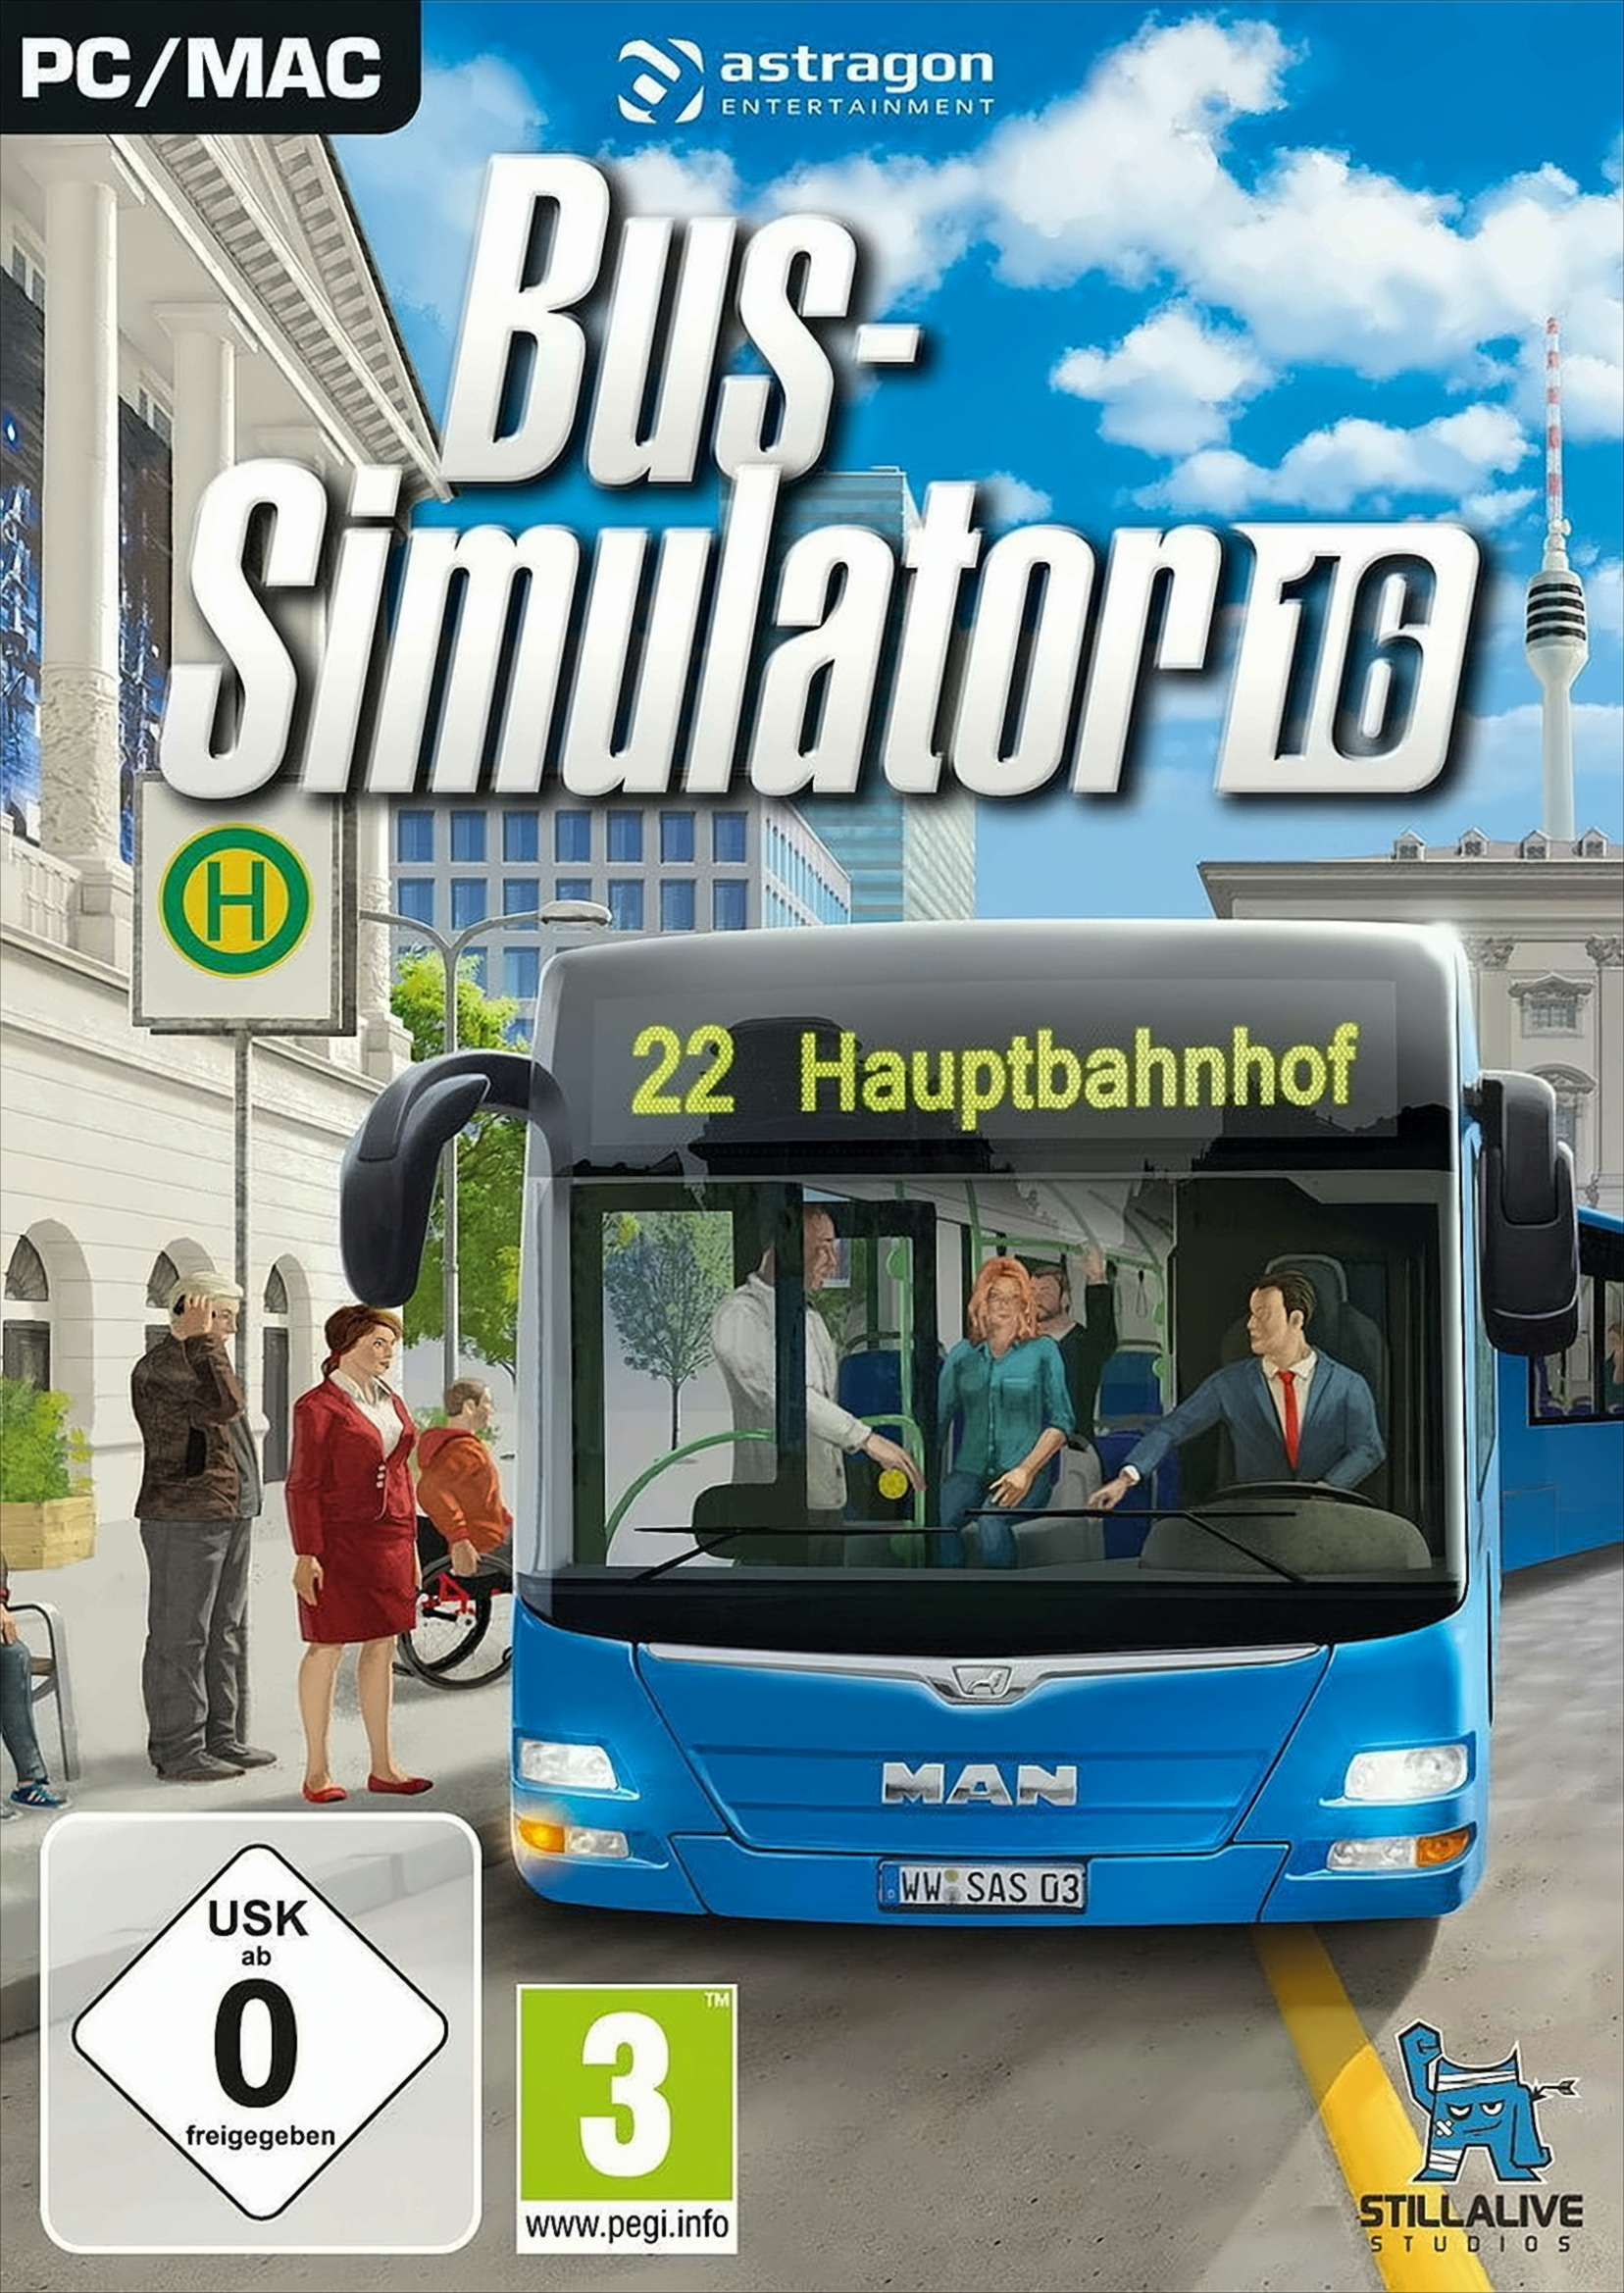 Bus-Simulator 16 - [PC